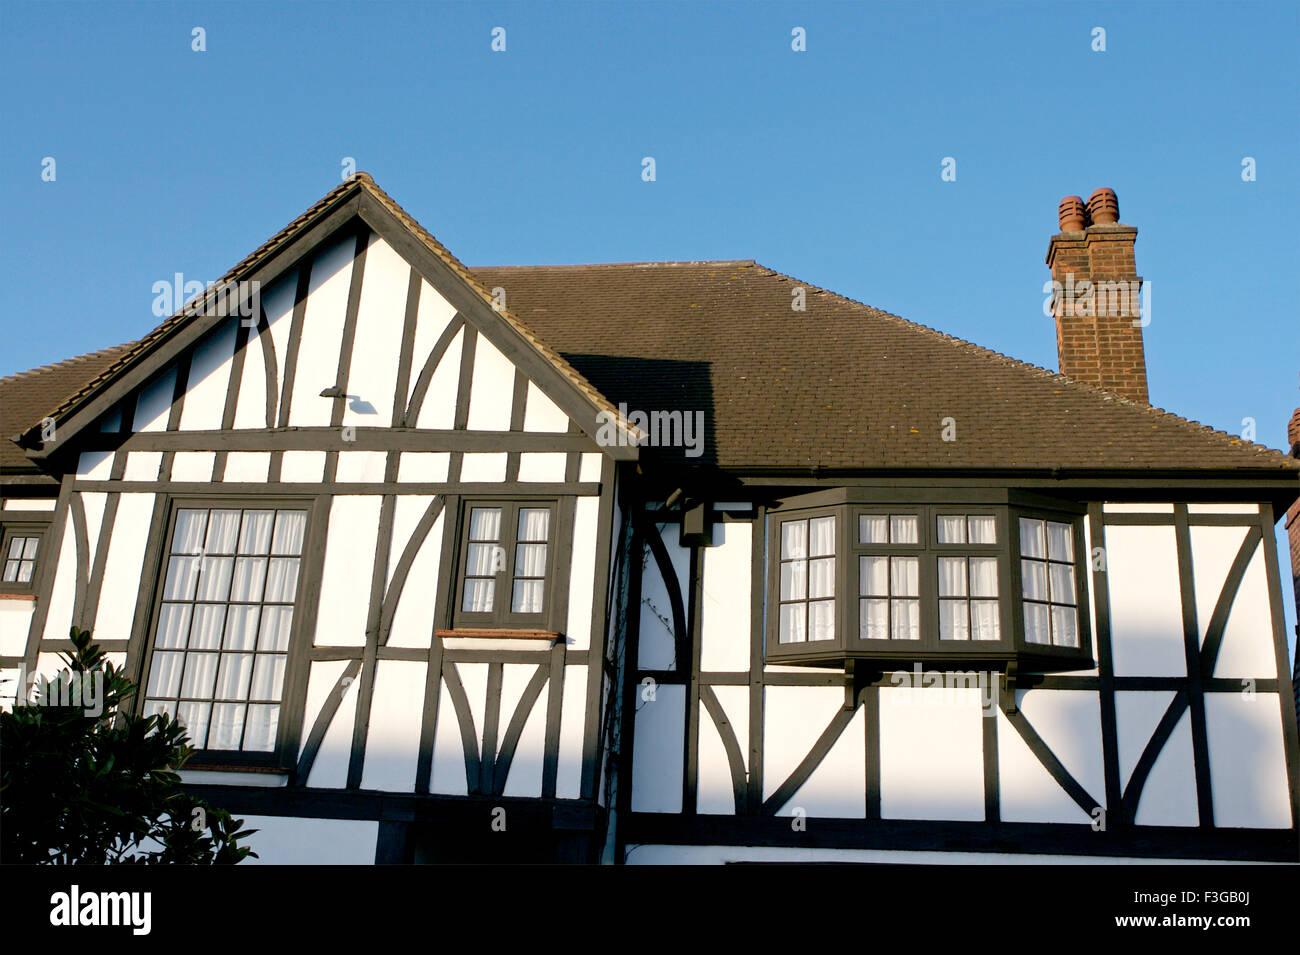 Chambre avec des murs blancs et noirs et fenêtre de toit brun ; Londres ; Royaume-Uni Royaume-Uni Angleterre Banque D'Images